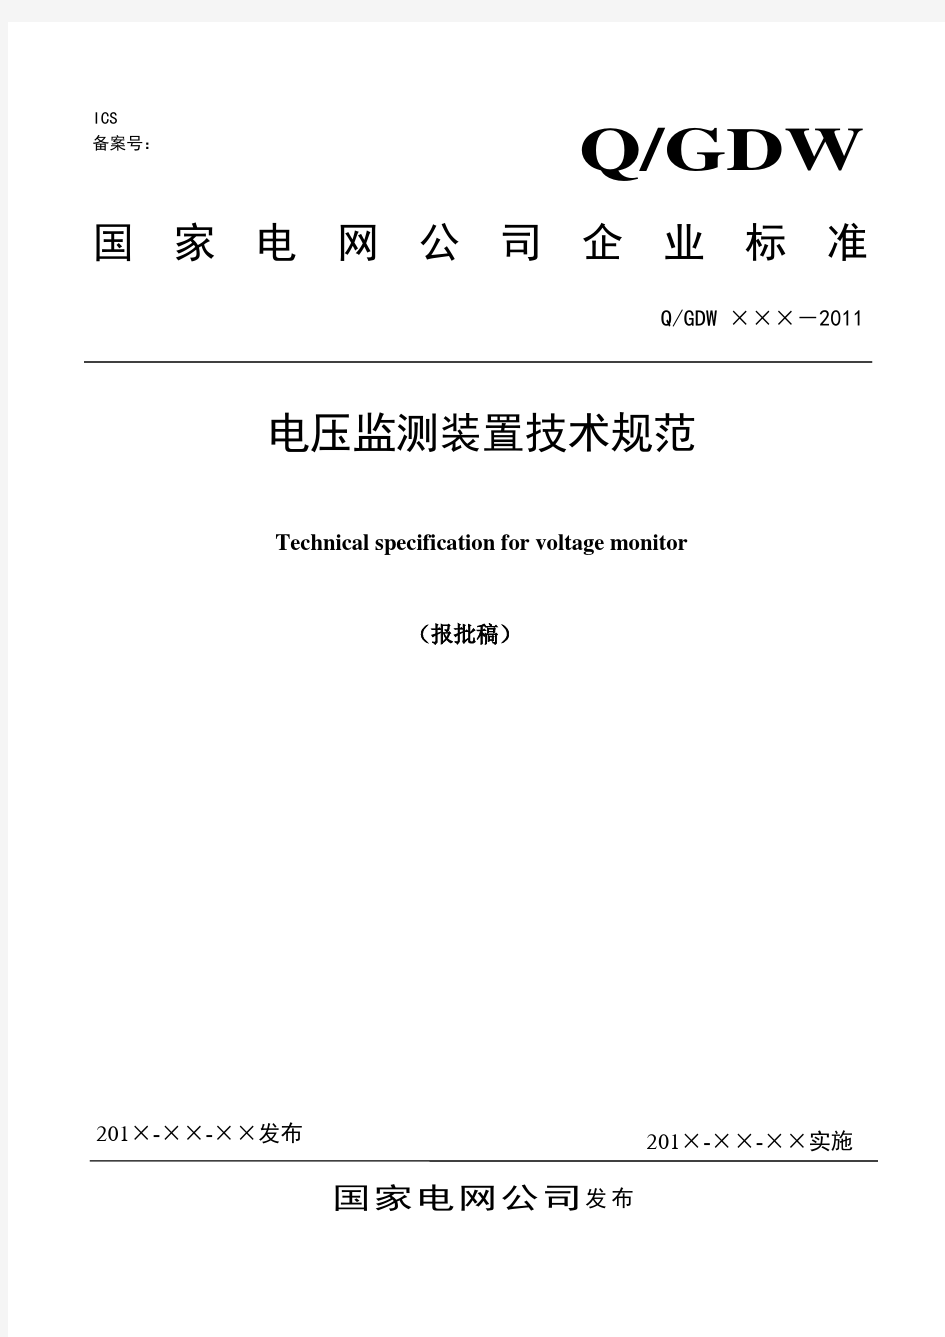 国家电网公司电压监测装置技术规范(报批稿)08.29模板